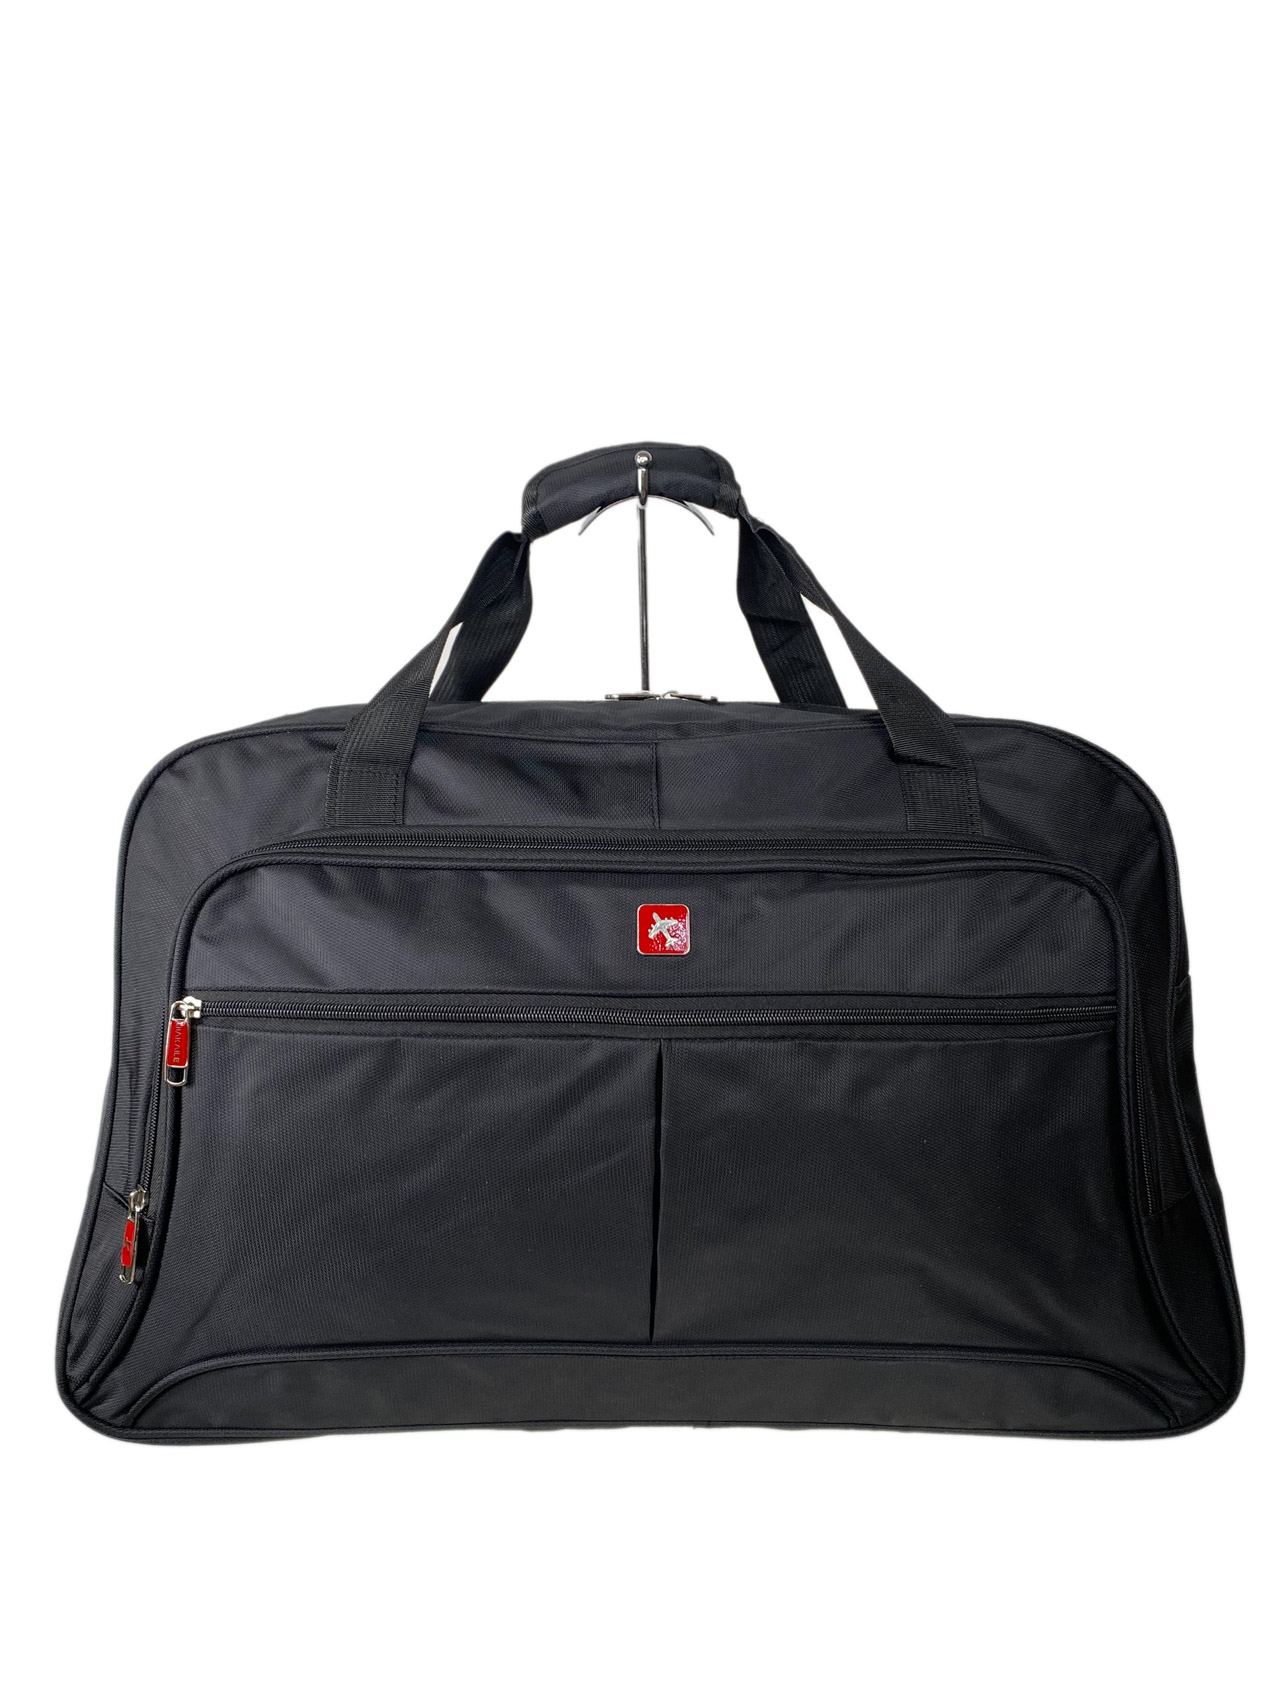 Багажная сумка из текстиля, цвет черный